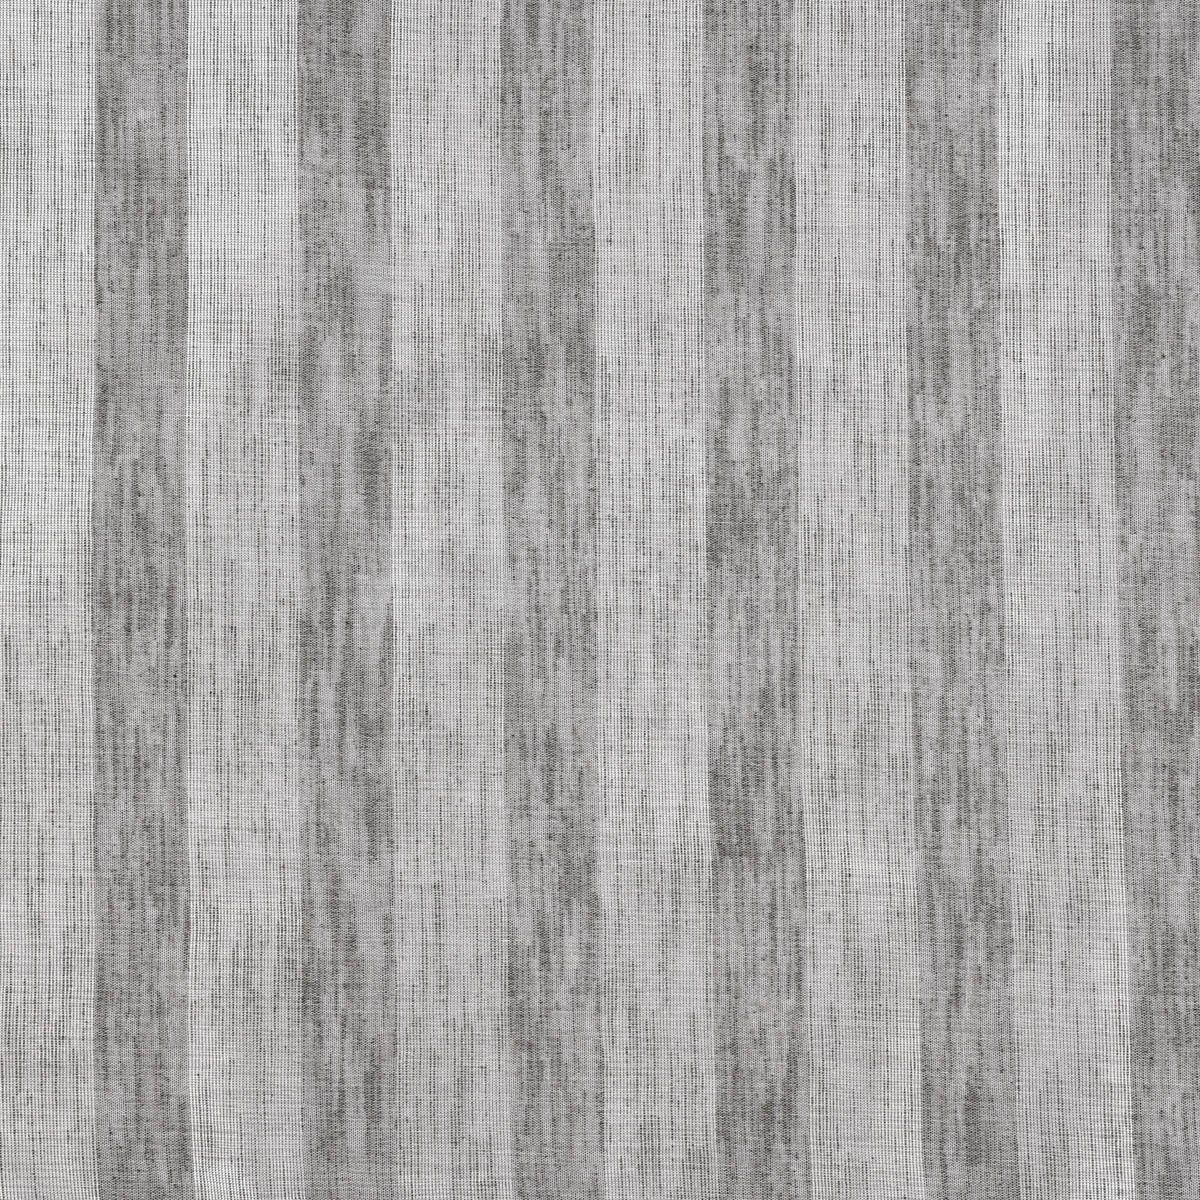 Stores silber Shine 30, Längsstreifen halbtransparent, Meterware Textil Leinenstruktur überbreit grau Kunstfaser, Rasch